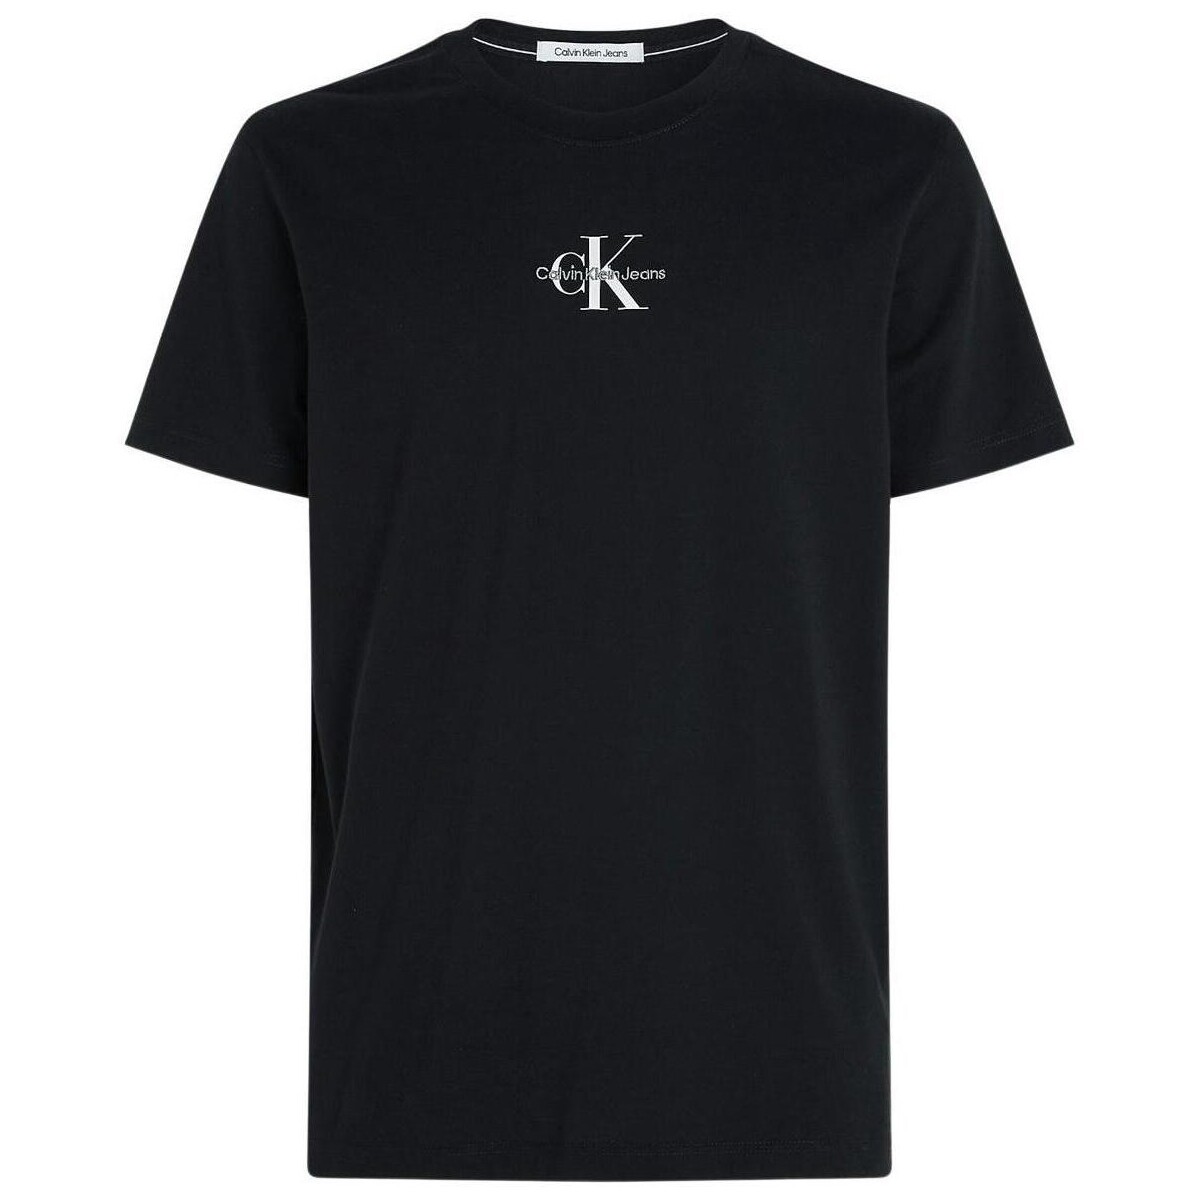 Vêtements Homme T-shirts manches courtes Calvin Klein Jeans  Noir